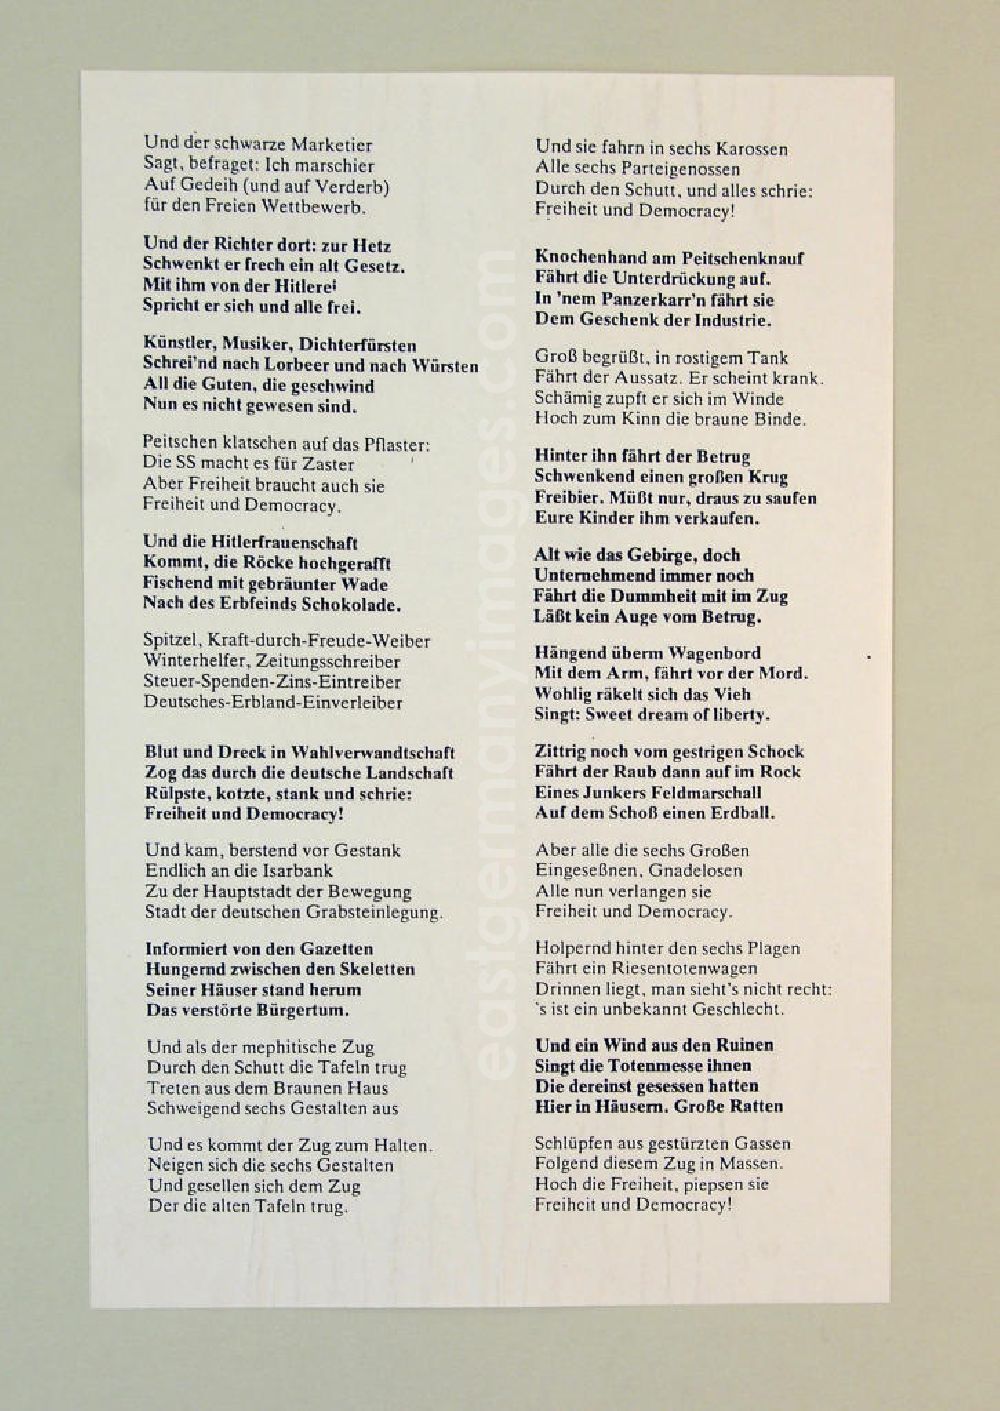 Berlin: Gedicht Teil 2 Der Anachronistische Zug oder Freiheit und Democracy von Bertolt Brecht aus dem Jahr 1947, Grundlage für Herbert Sandbergs Zyklus Der anachronistische Zug aus den Jahren 1982/83.